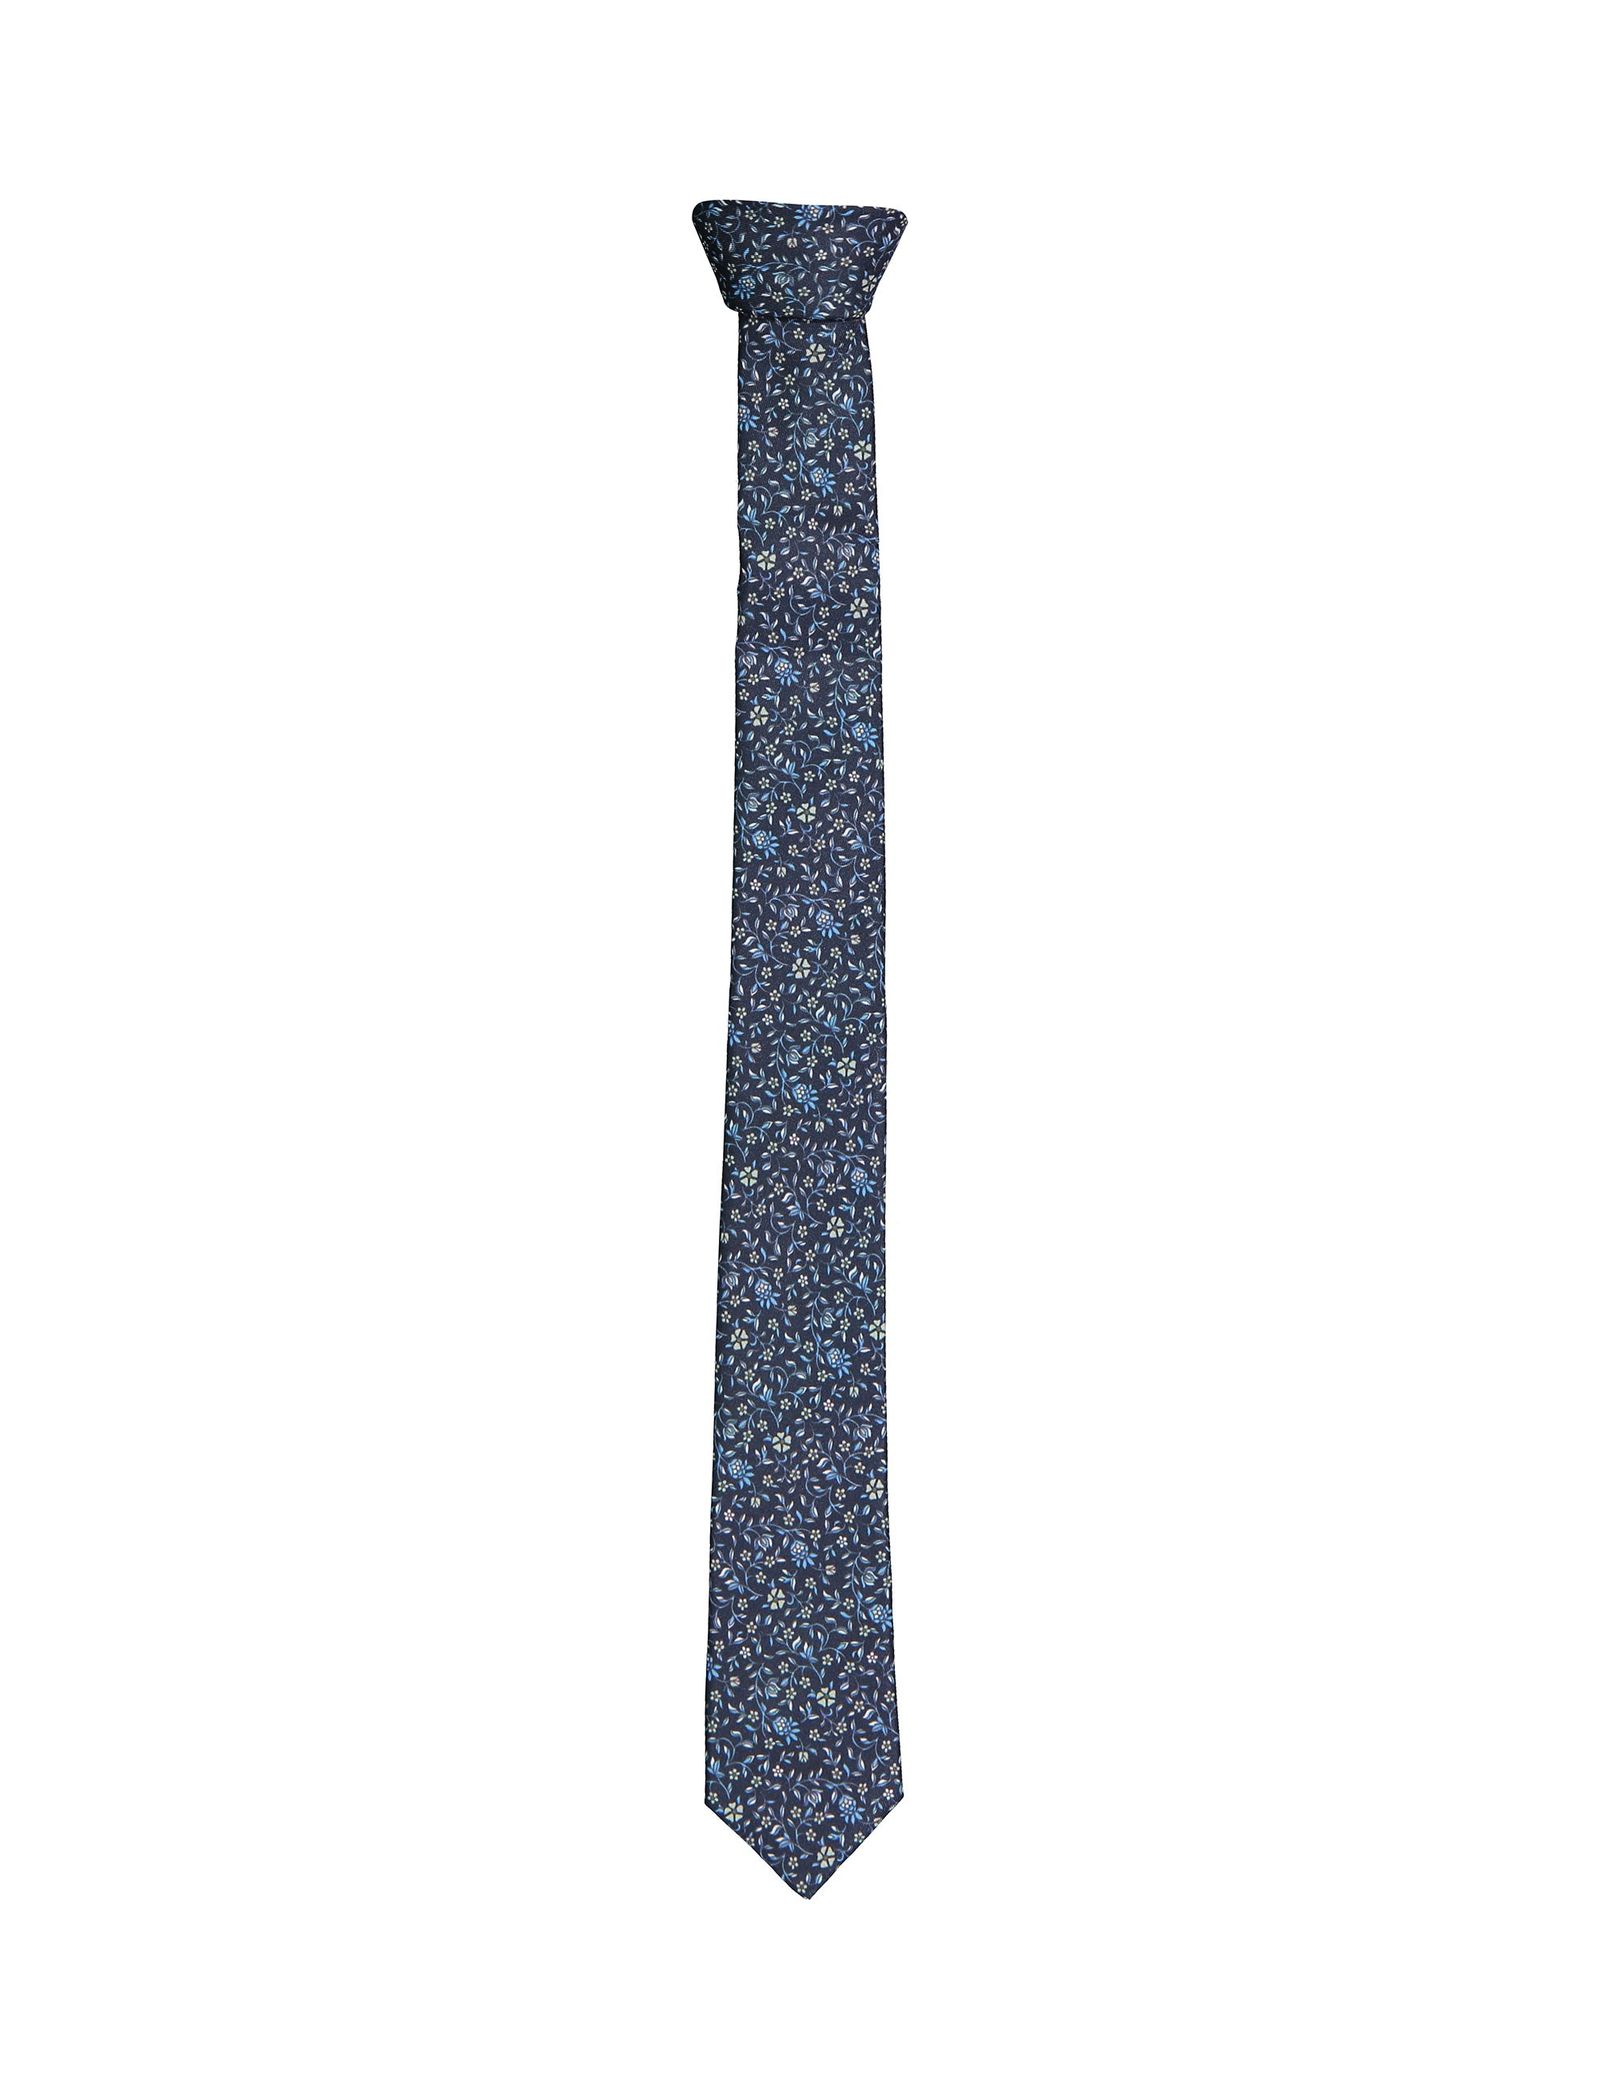 کراوات طرح دار مردانه - سلکتد - سرمه اي - 2